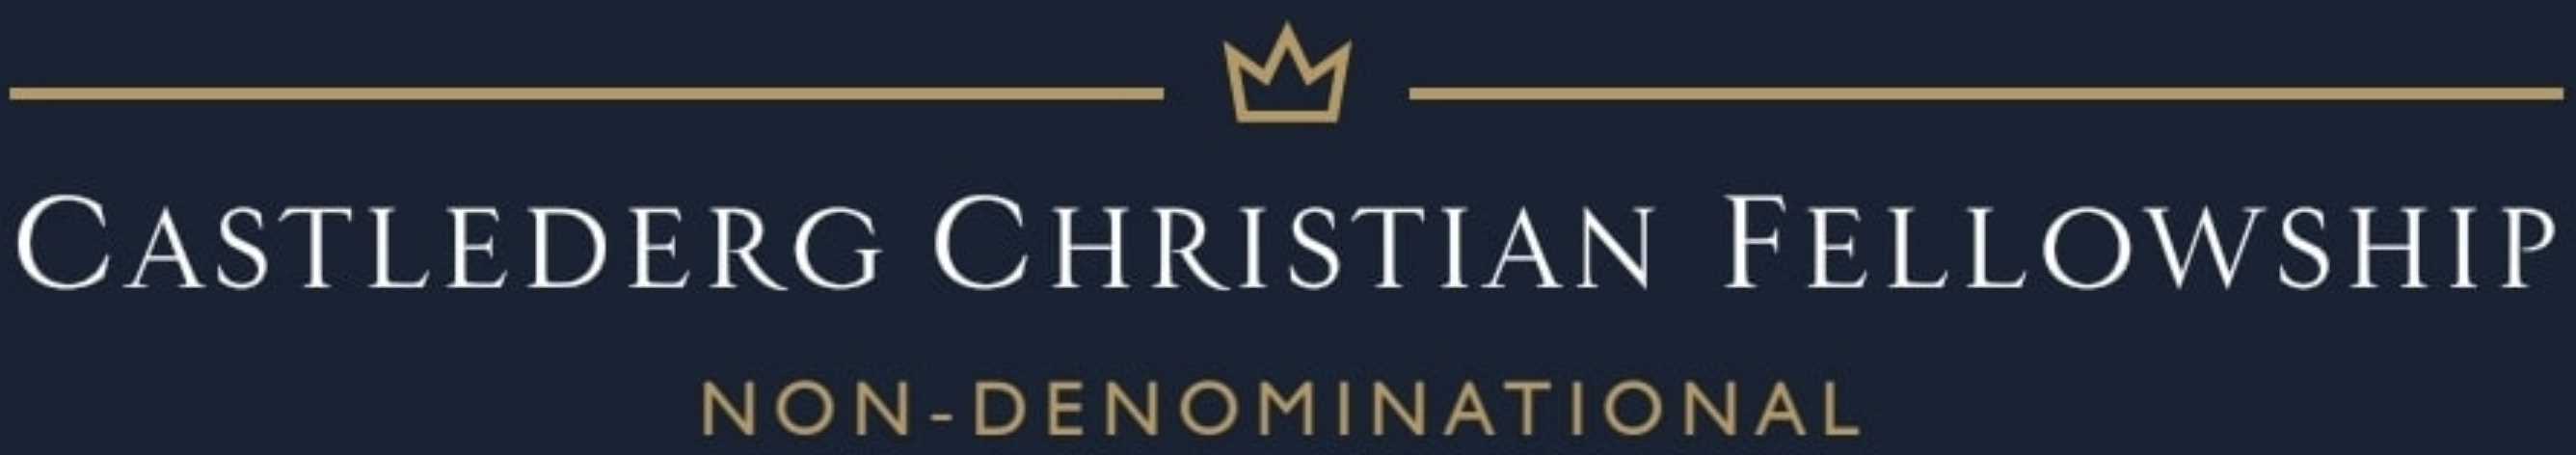 Castlederg Christian Fellowship Logo 2